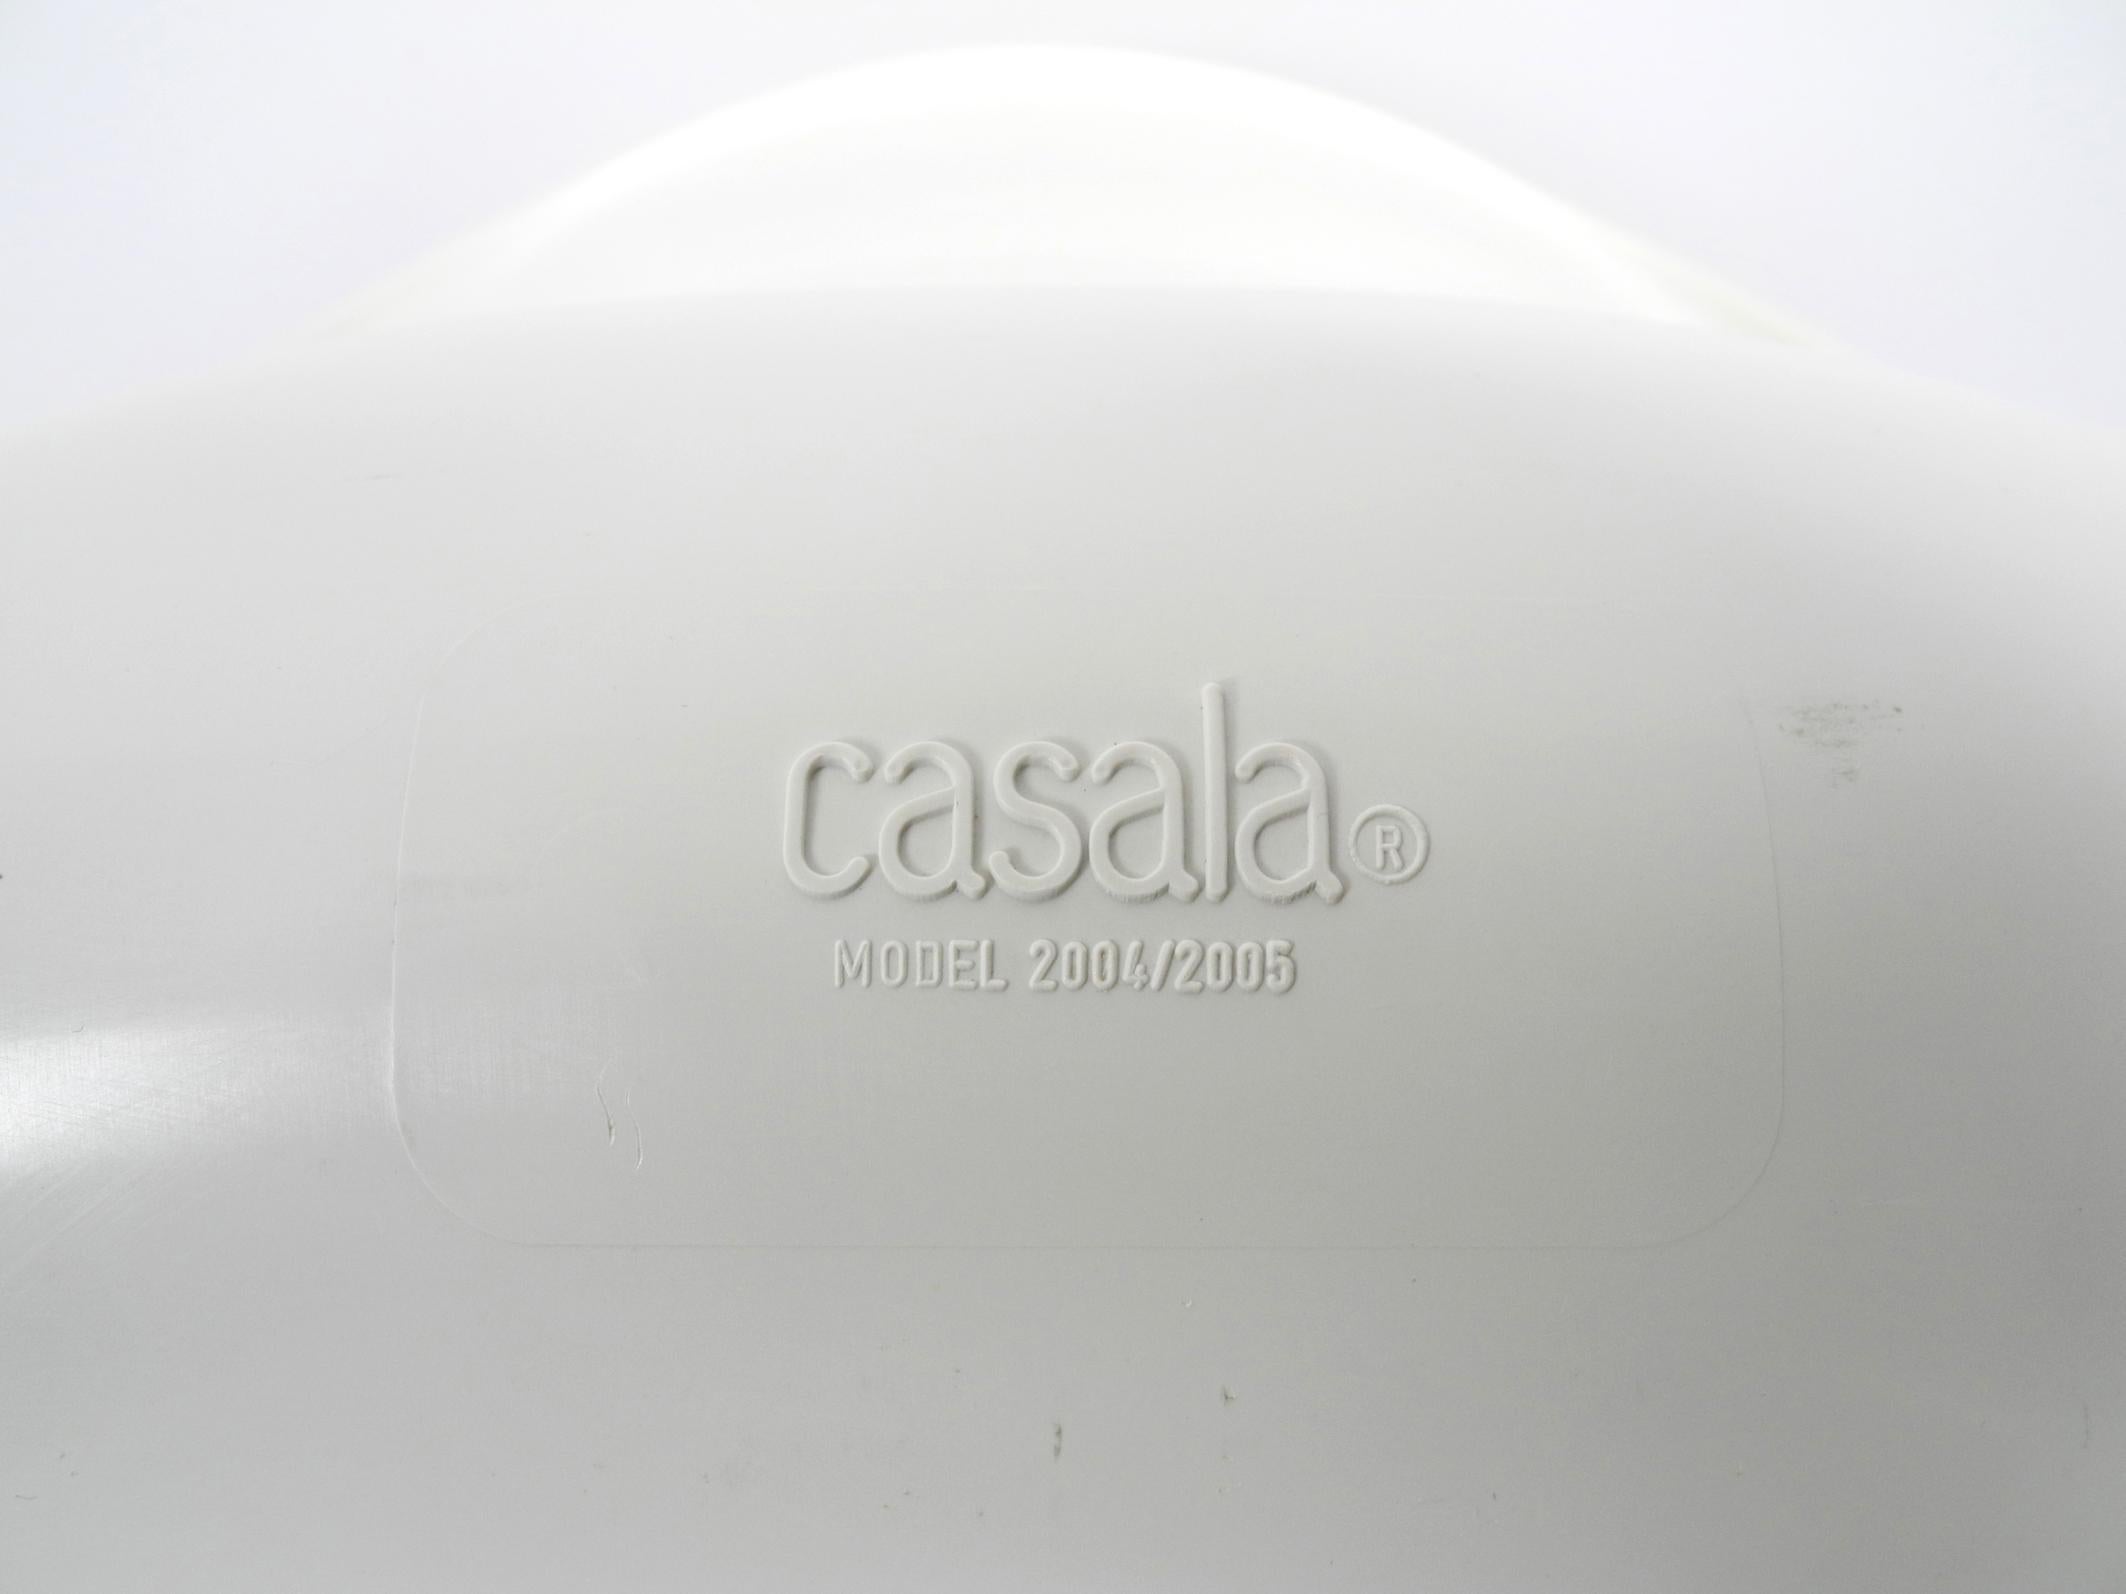 Drei Original Casalino Stühle von Casala Modell 2004/2005 aus den Jahren 1973 und 1980 3